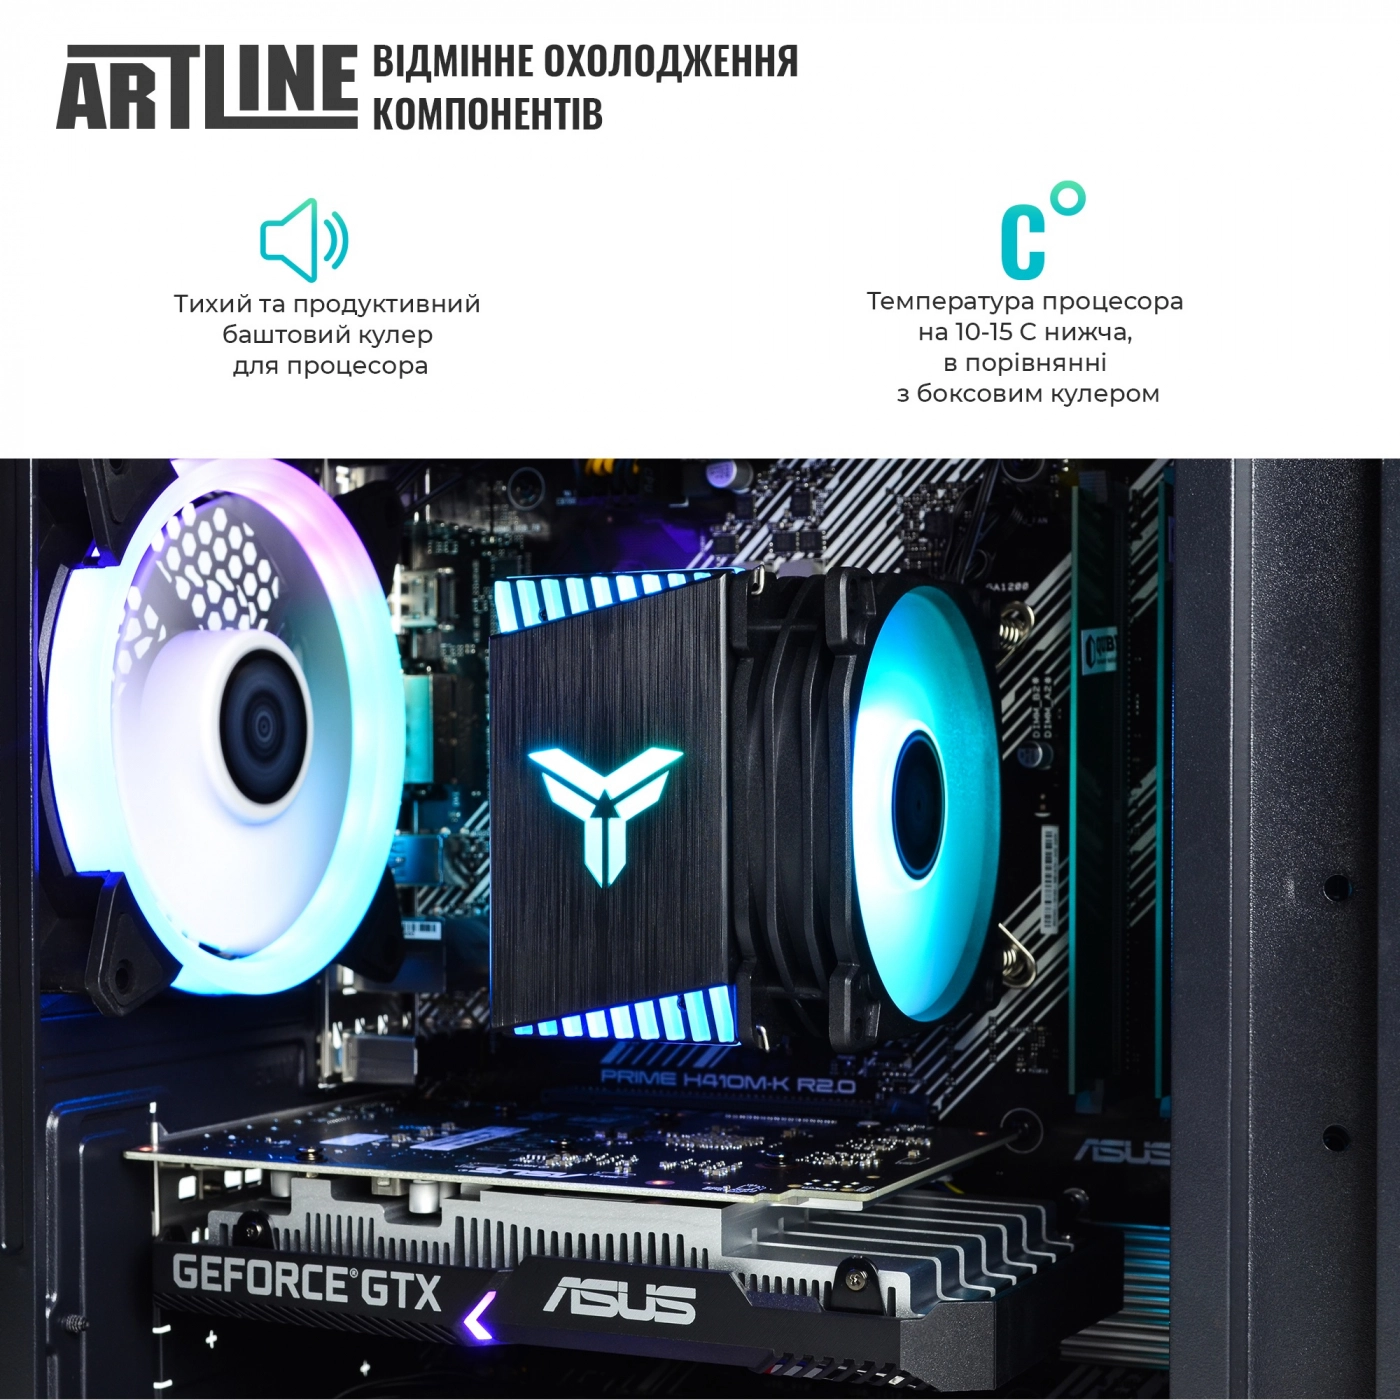 Купить Компьютер ARTLINE Gaming X43v31 - фото 3